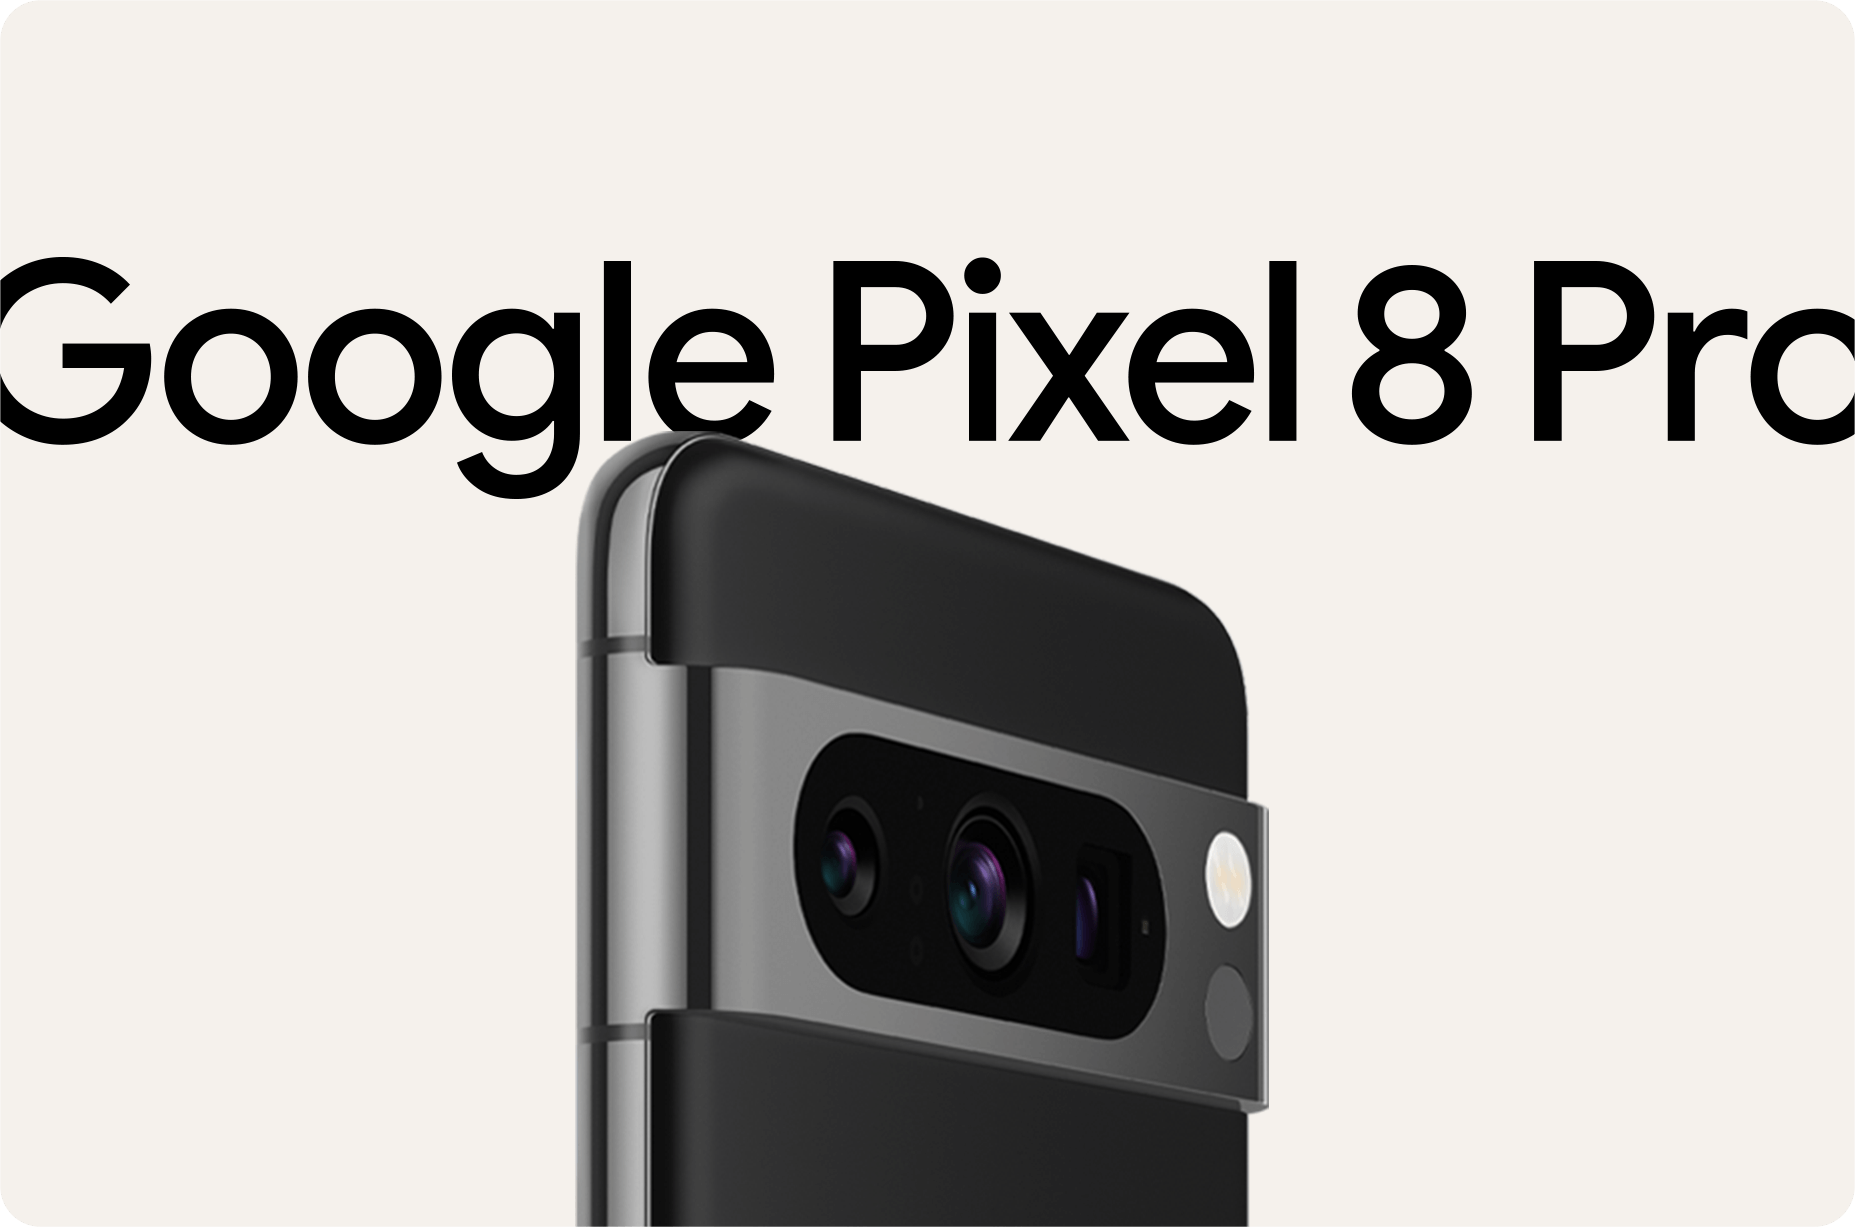 googlepixel8pro